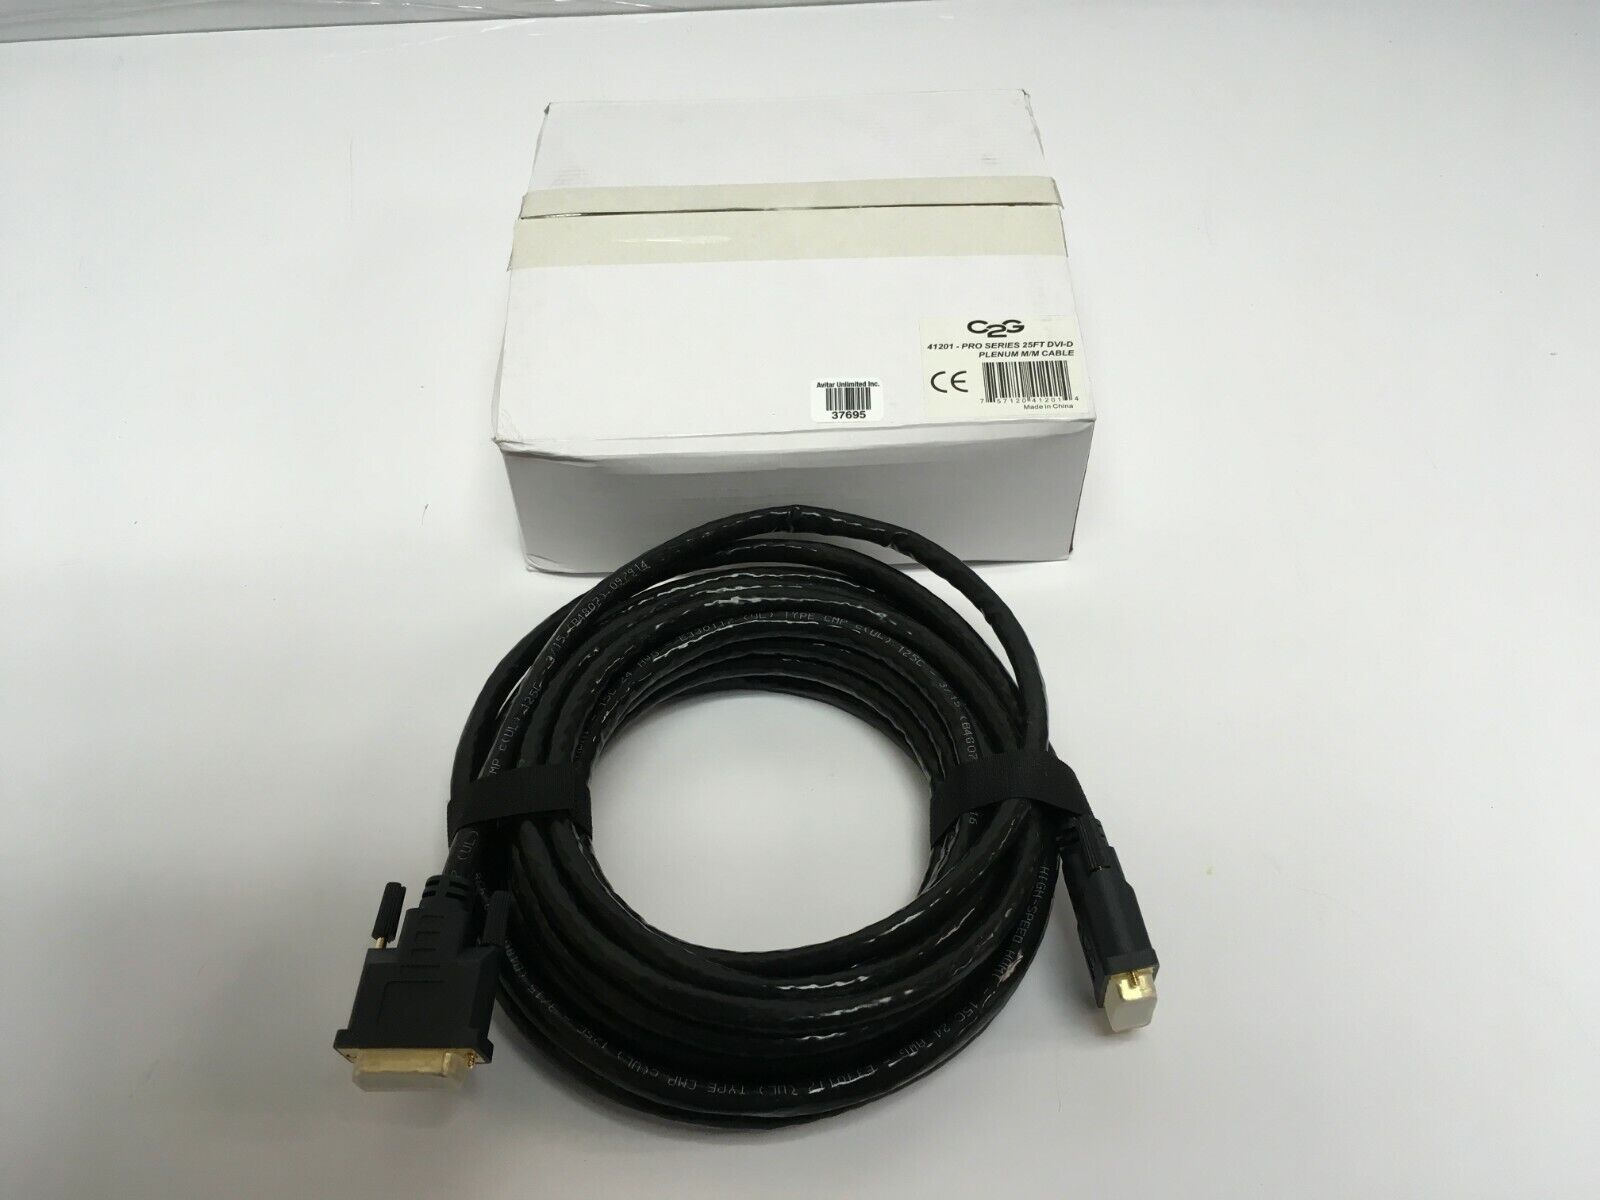 NEW C2G 41201 Pro Series Single Link DVI-D Digital Video Cable M/M, Plenum CMP